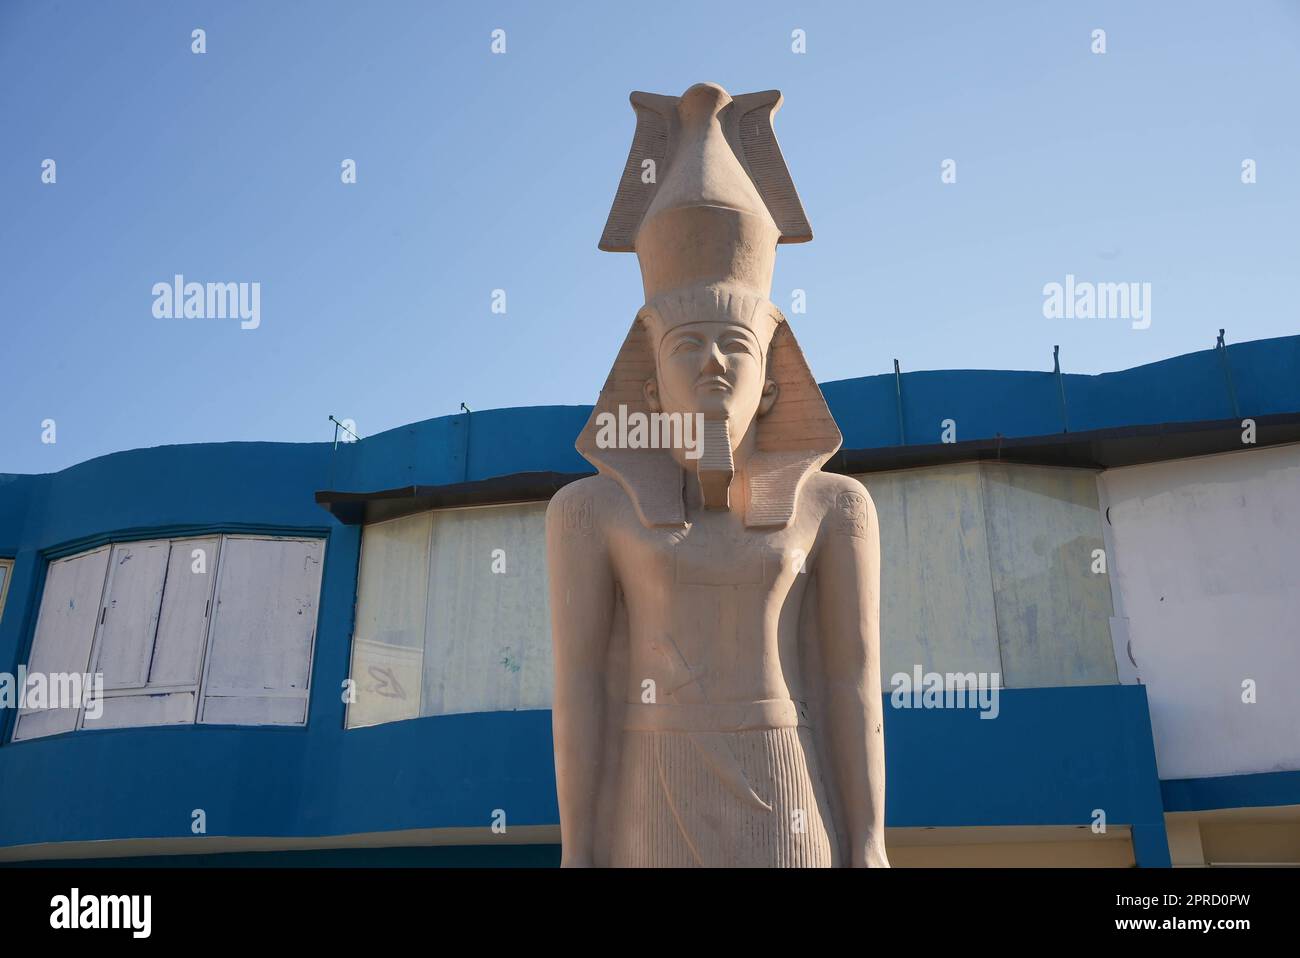 Une ancienne statue égyptienne devant un bâtiment bleu Banque D'Images